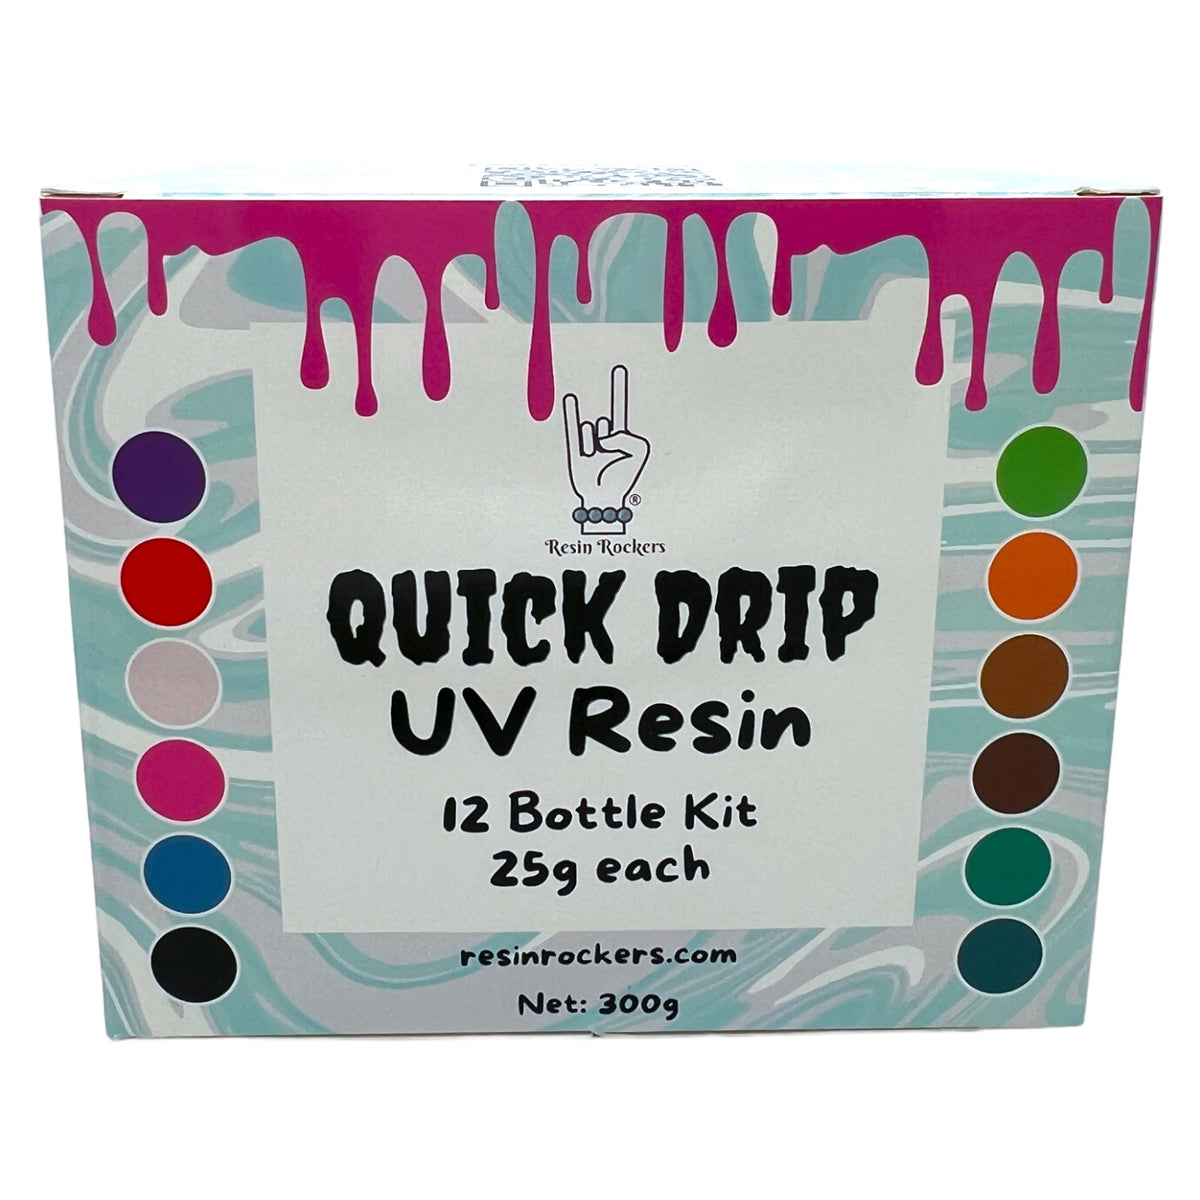 Resin Rockers - UV Resin Original Coat